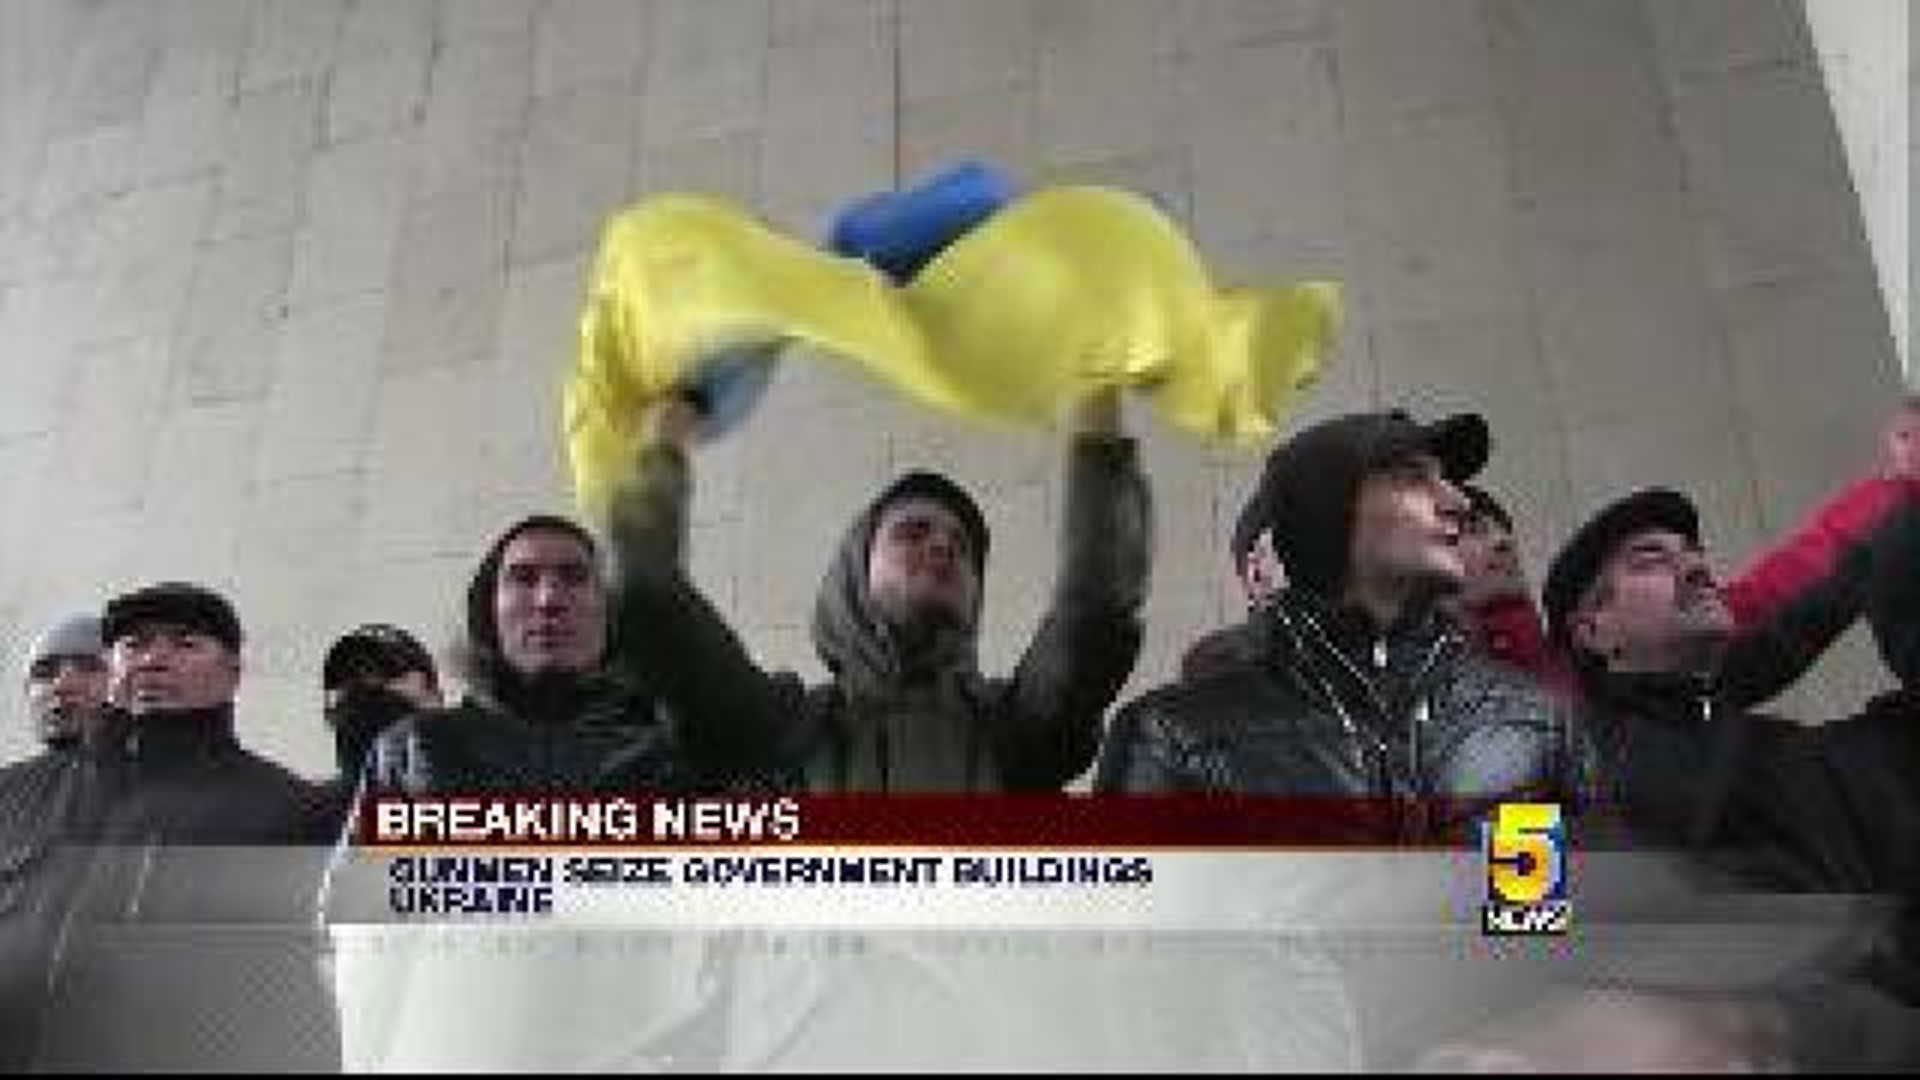 Gunmen Seize Government Buildings in Ukraine